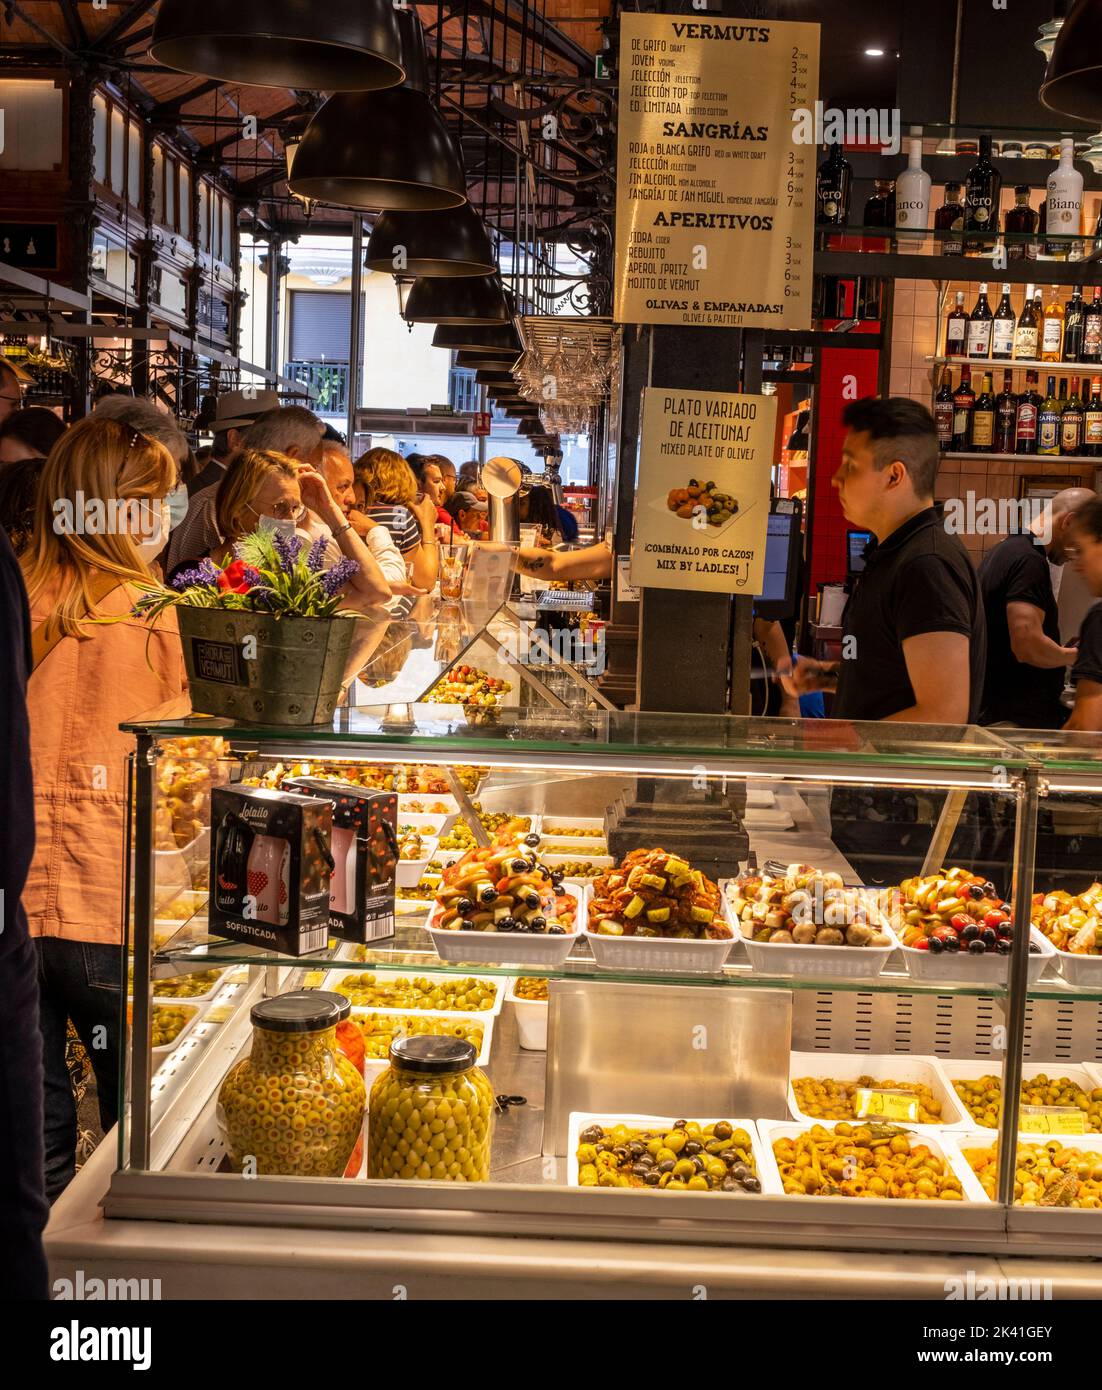 España, Madrid. Mercado de San Miguel. Bar de olivas. Foto de stock